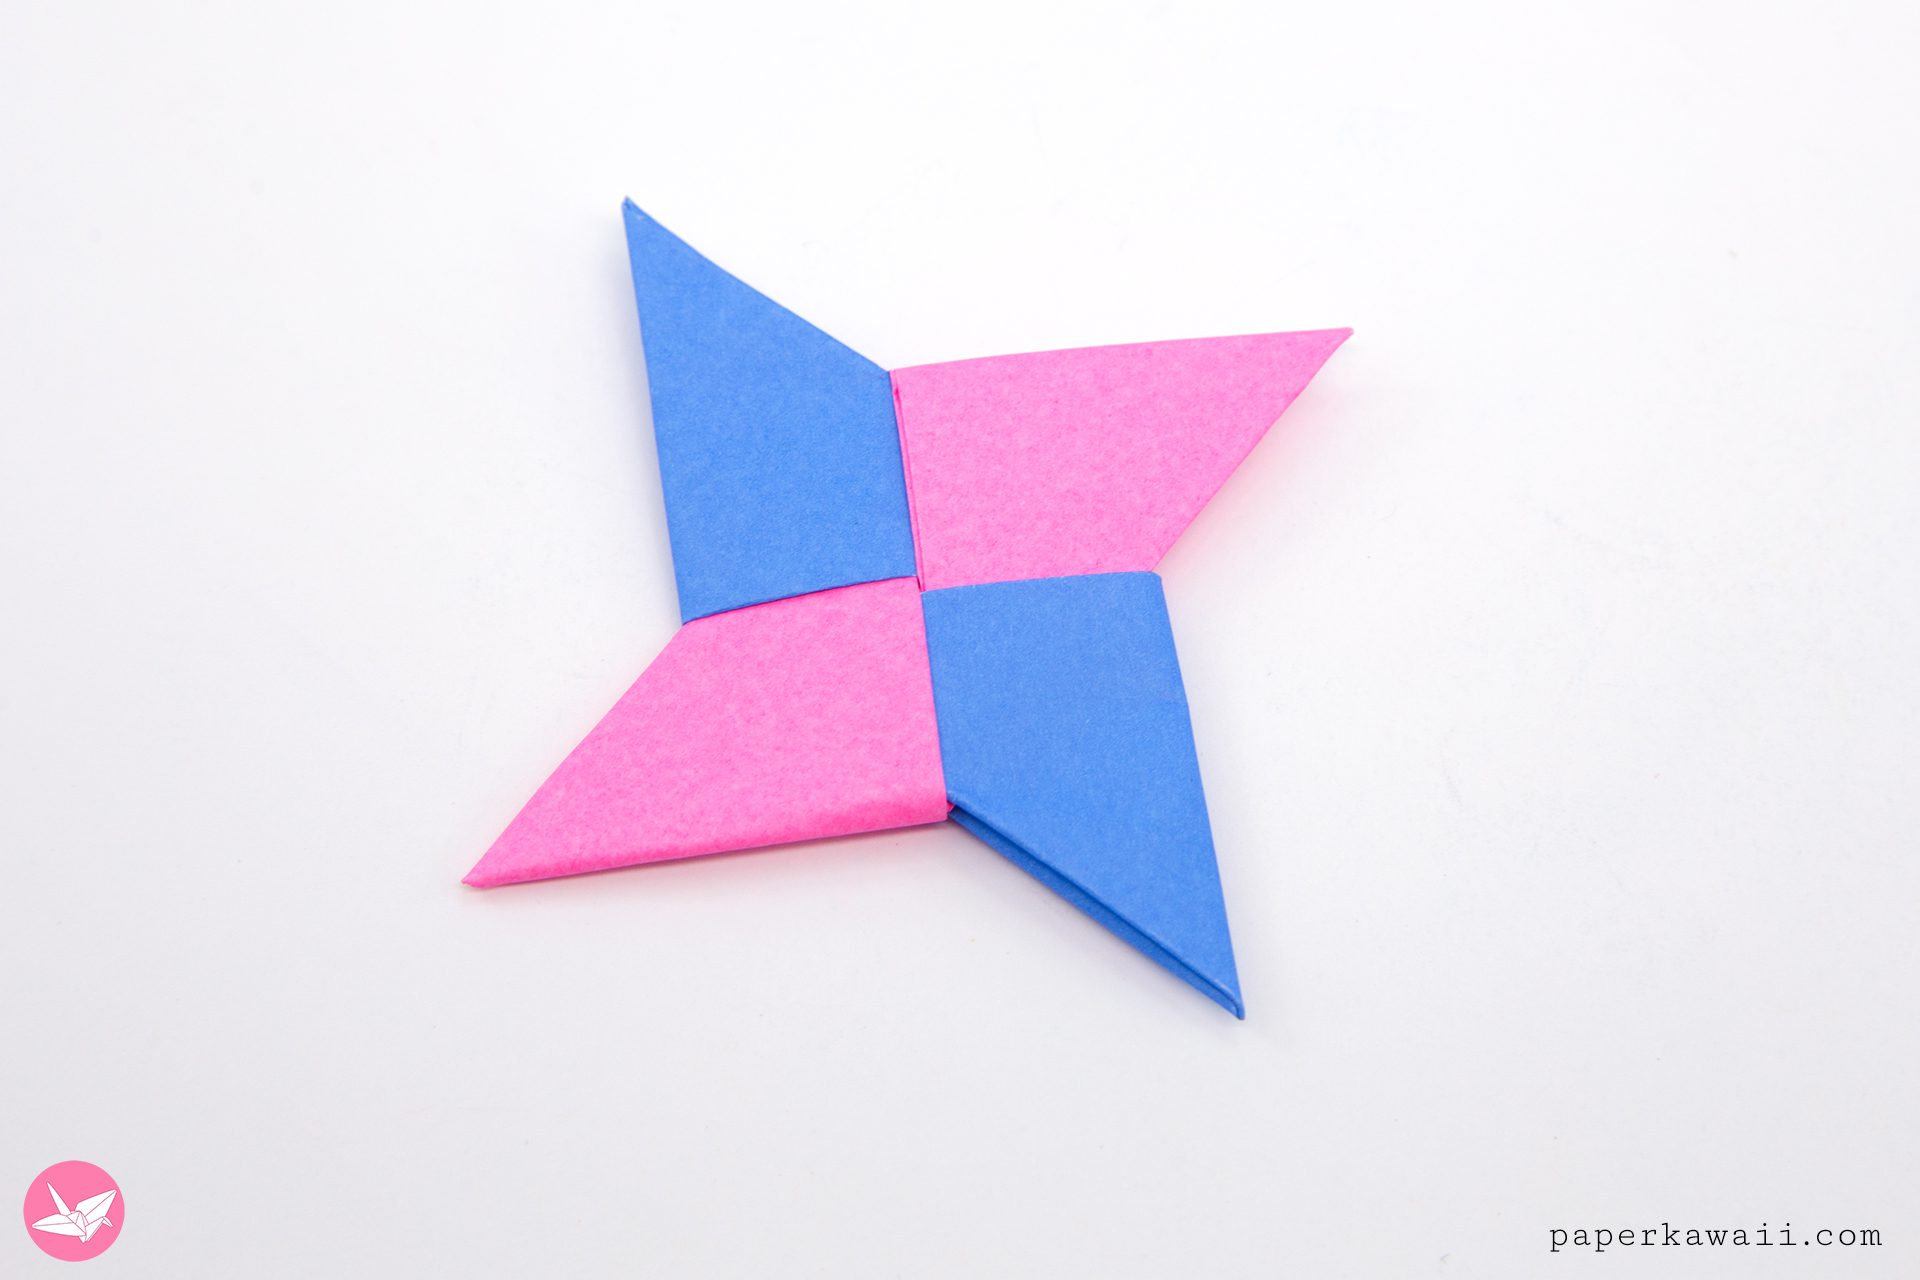 https://www.paperkawaii.com/wp-content/uploads/2018/11/origami-ninja-star-shuriken-paper-kawaii-03.jpg